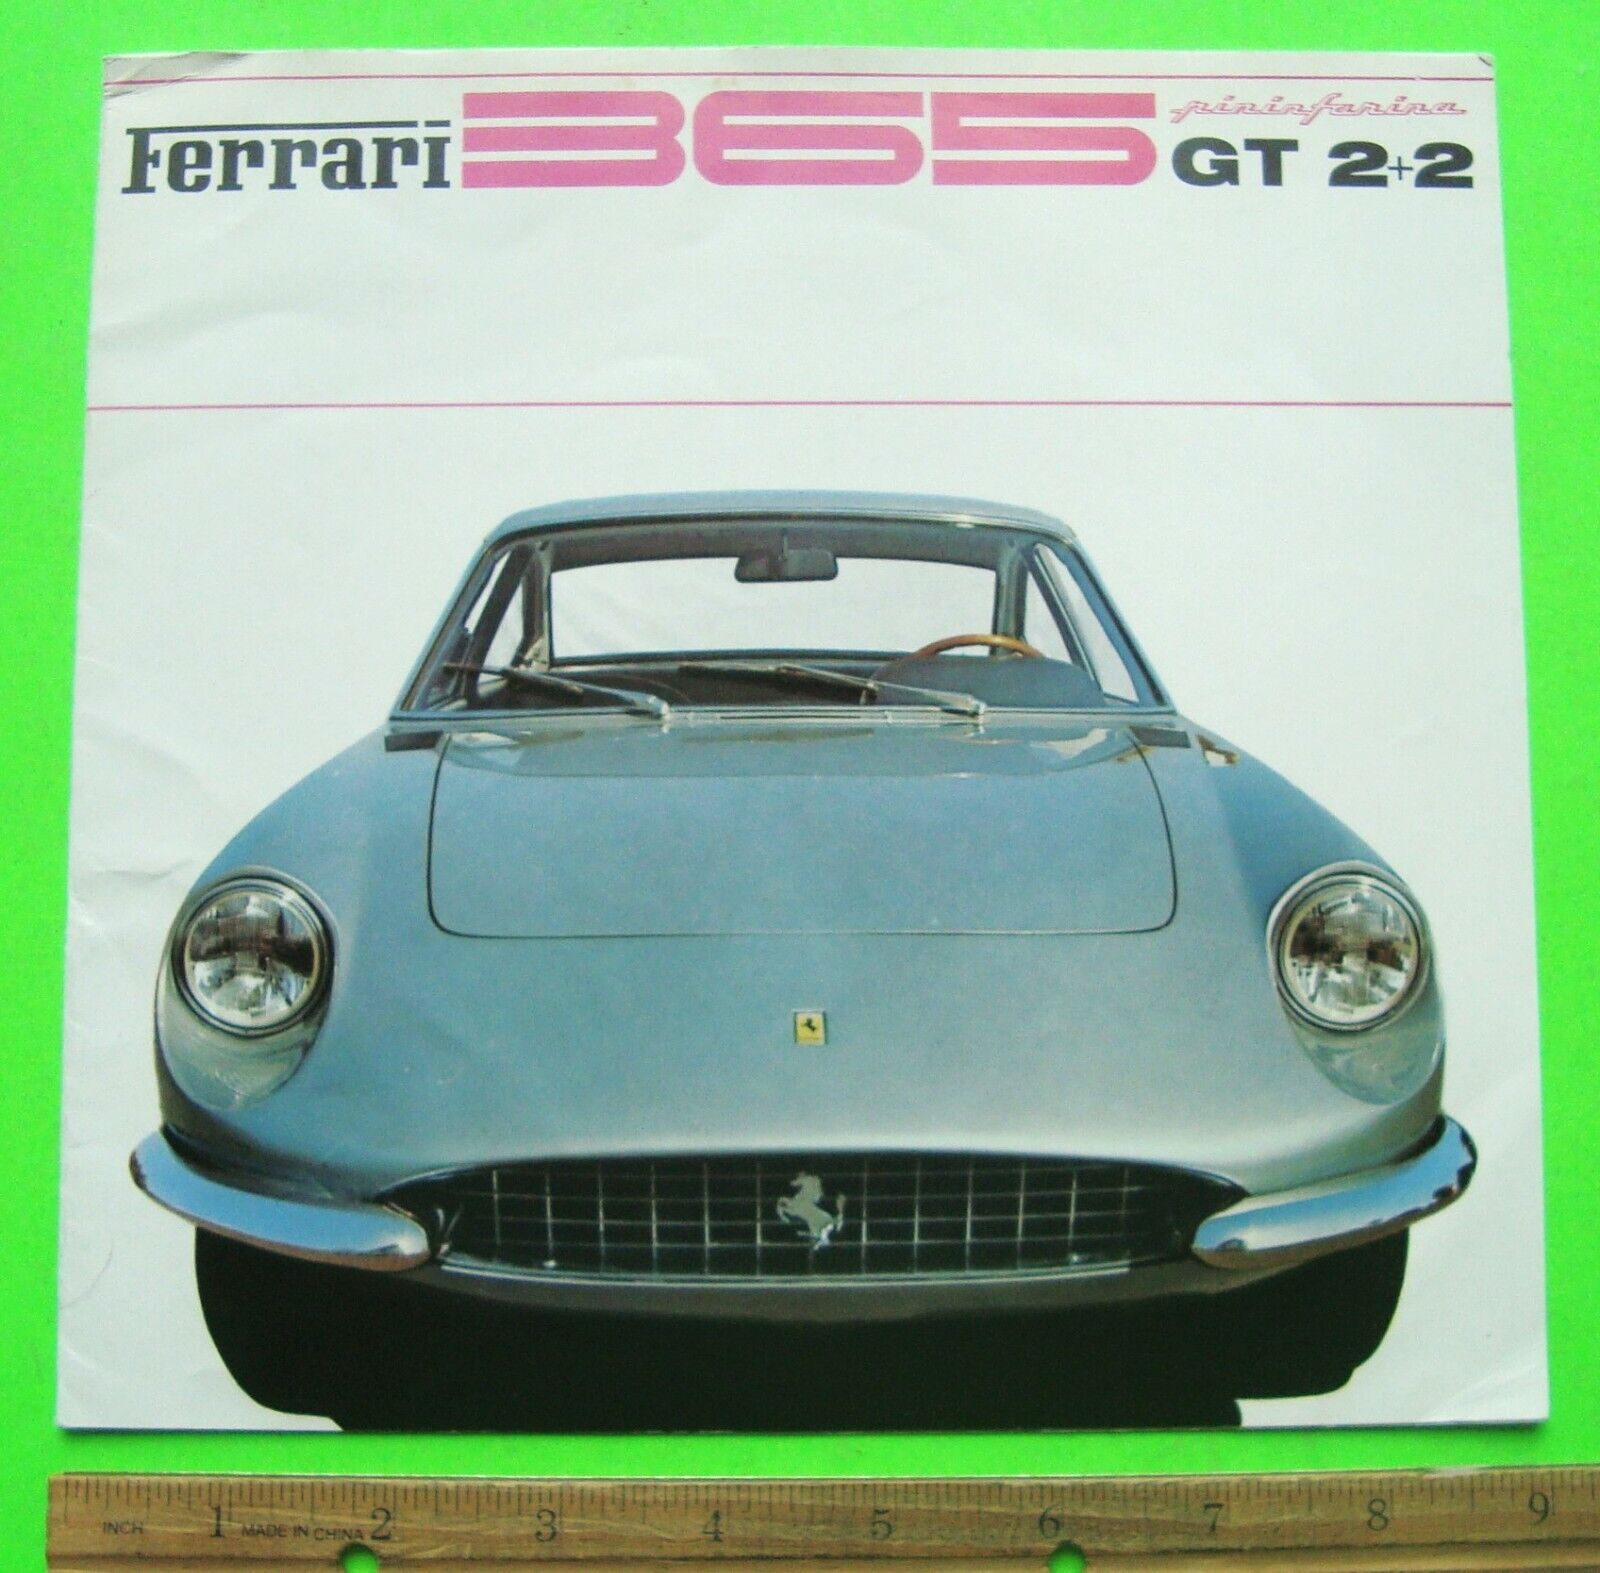 1968 FERRARI 365 GT 2+2 V-12 DLX COLOR FOLDER BROCHURE 3 Languages XLNT